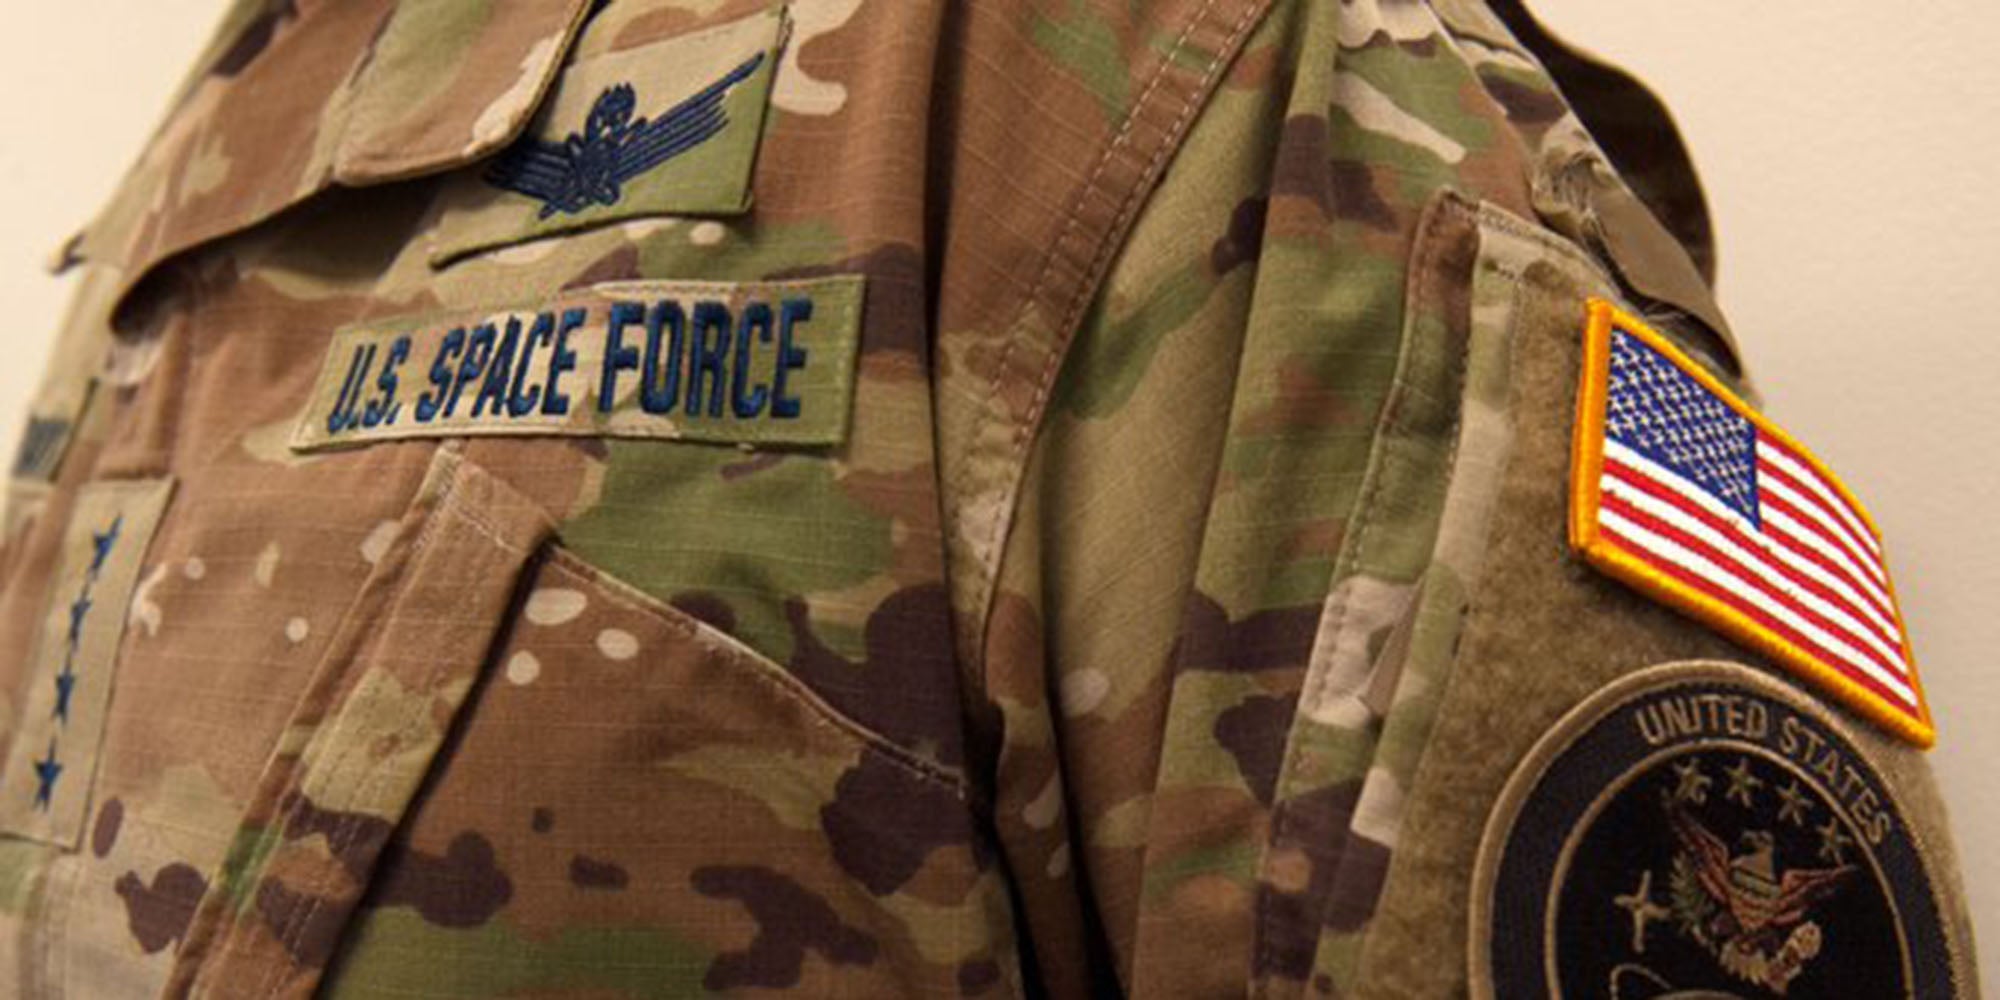 space force uniform